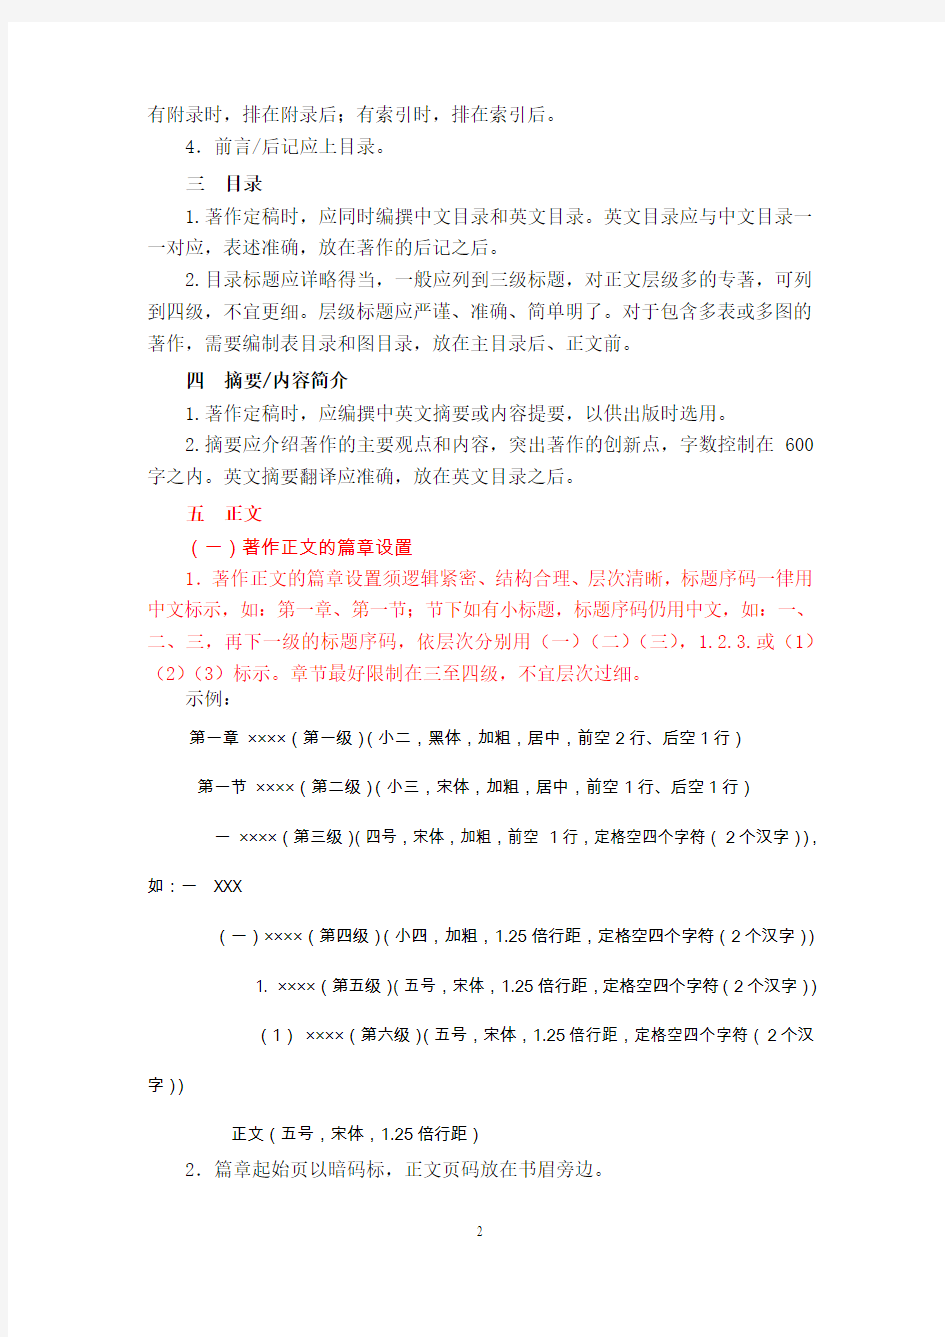 中国社会科学出版社学术着作体例规范-湖南科技大学社会科学处